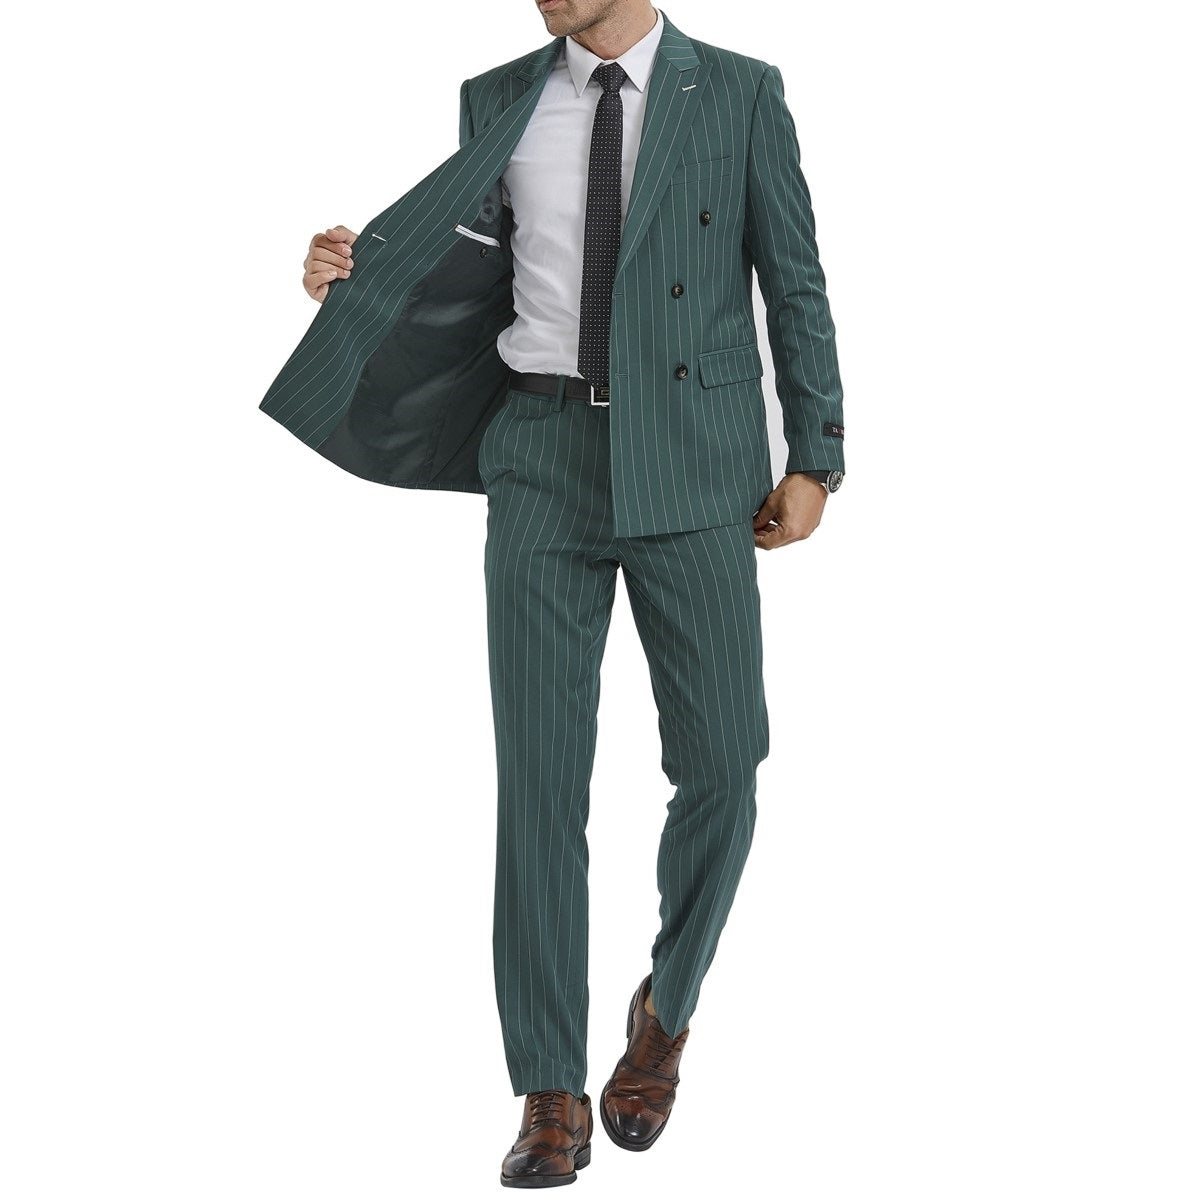 Traje Formal para Hombre TA-M340SK-06 - Formal Suit for Men